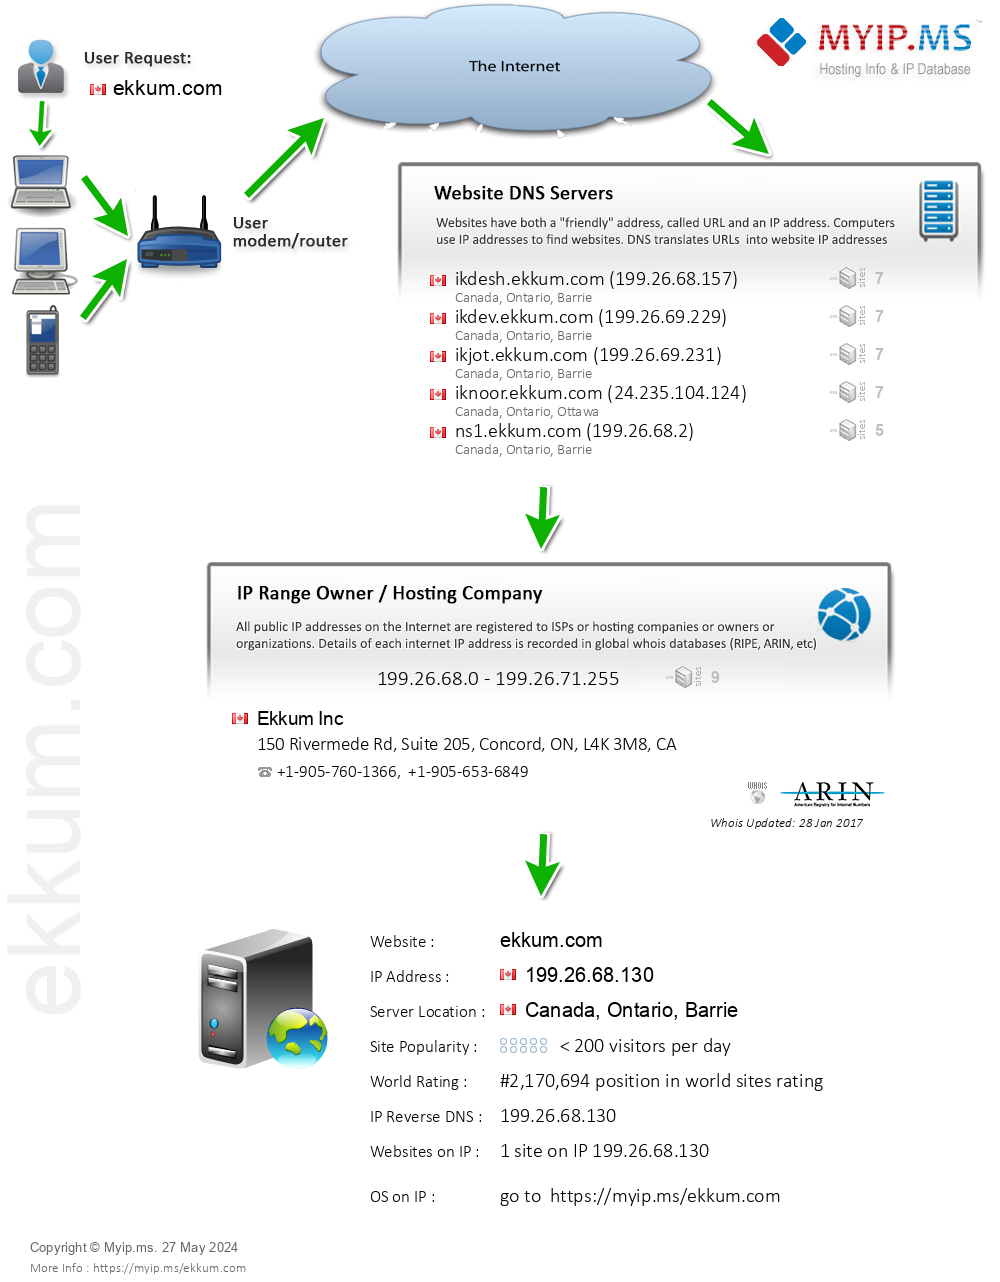 Ekkum.com - Website Hosting Visual IP Diagram